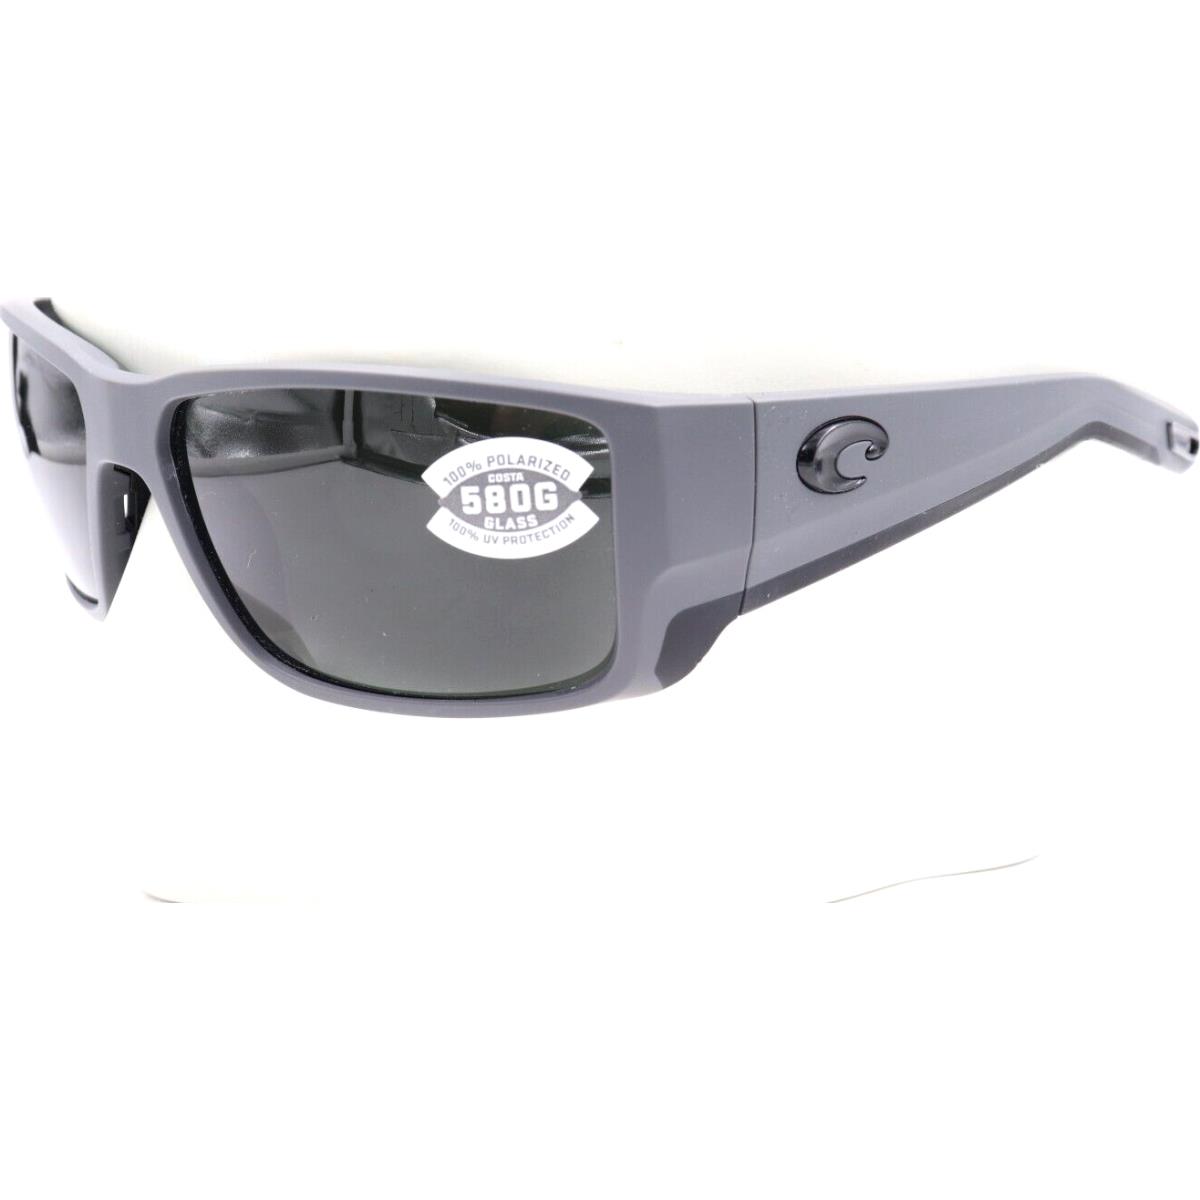 Costa Del Mar sunglasses BLACKFIN PRO - Matte gray Frame, Gray Lens 0